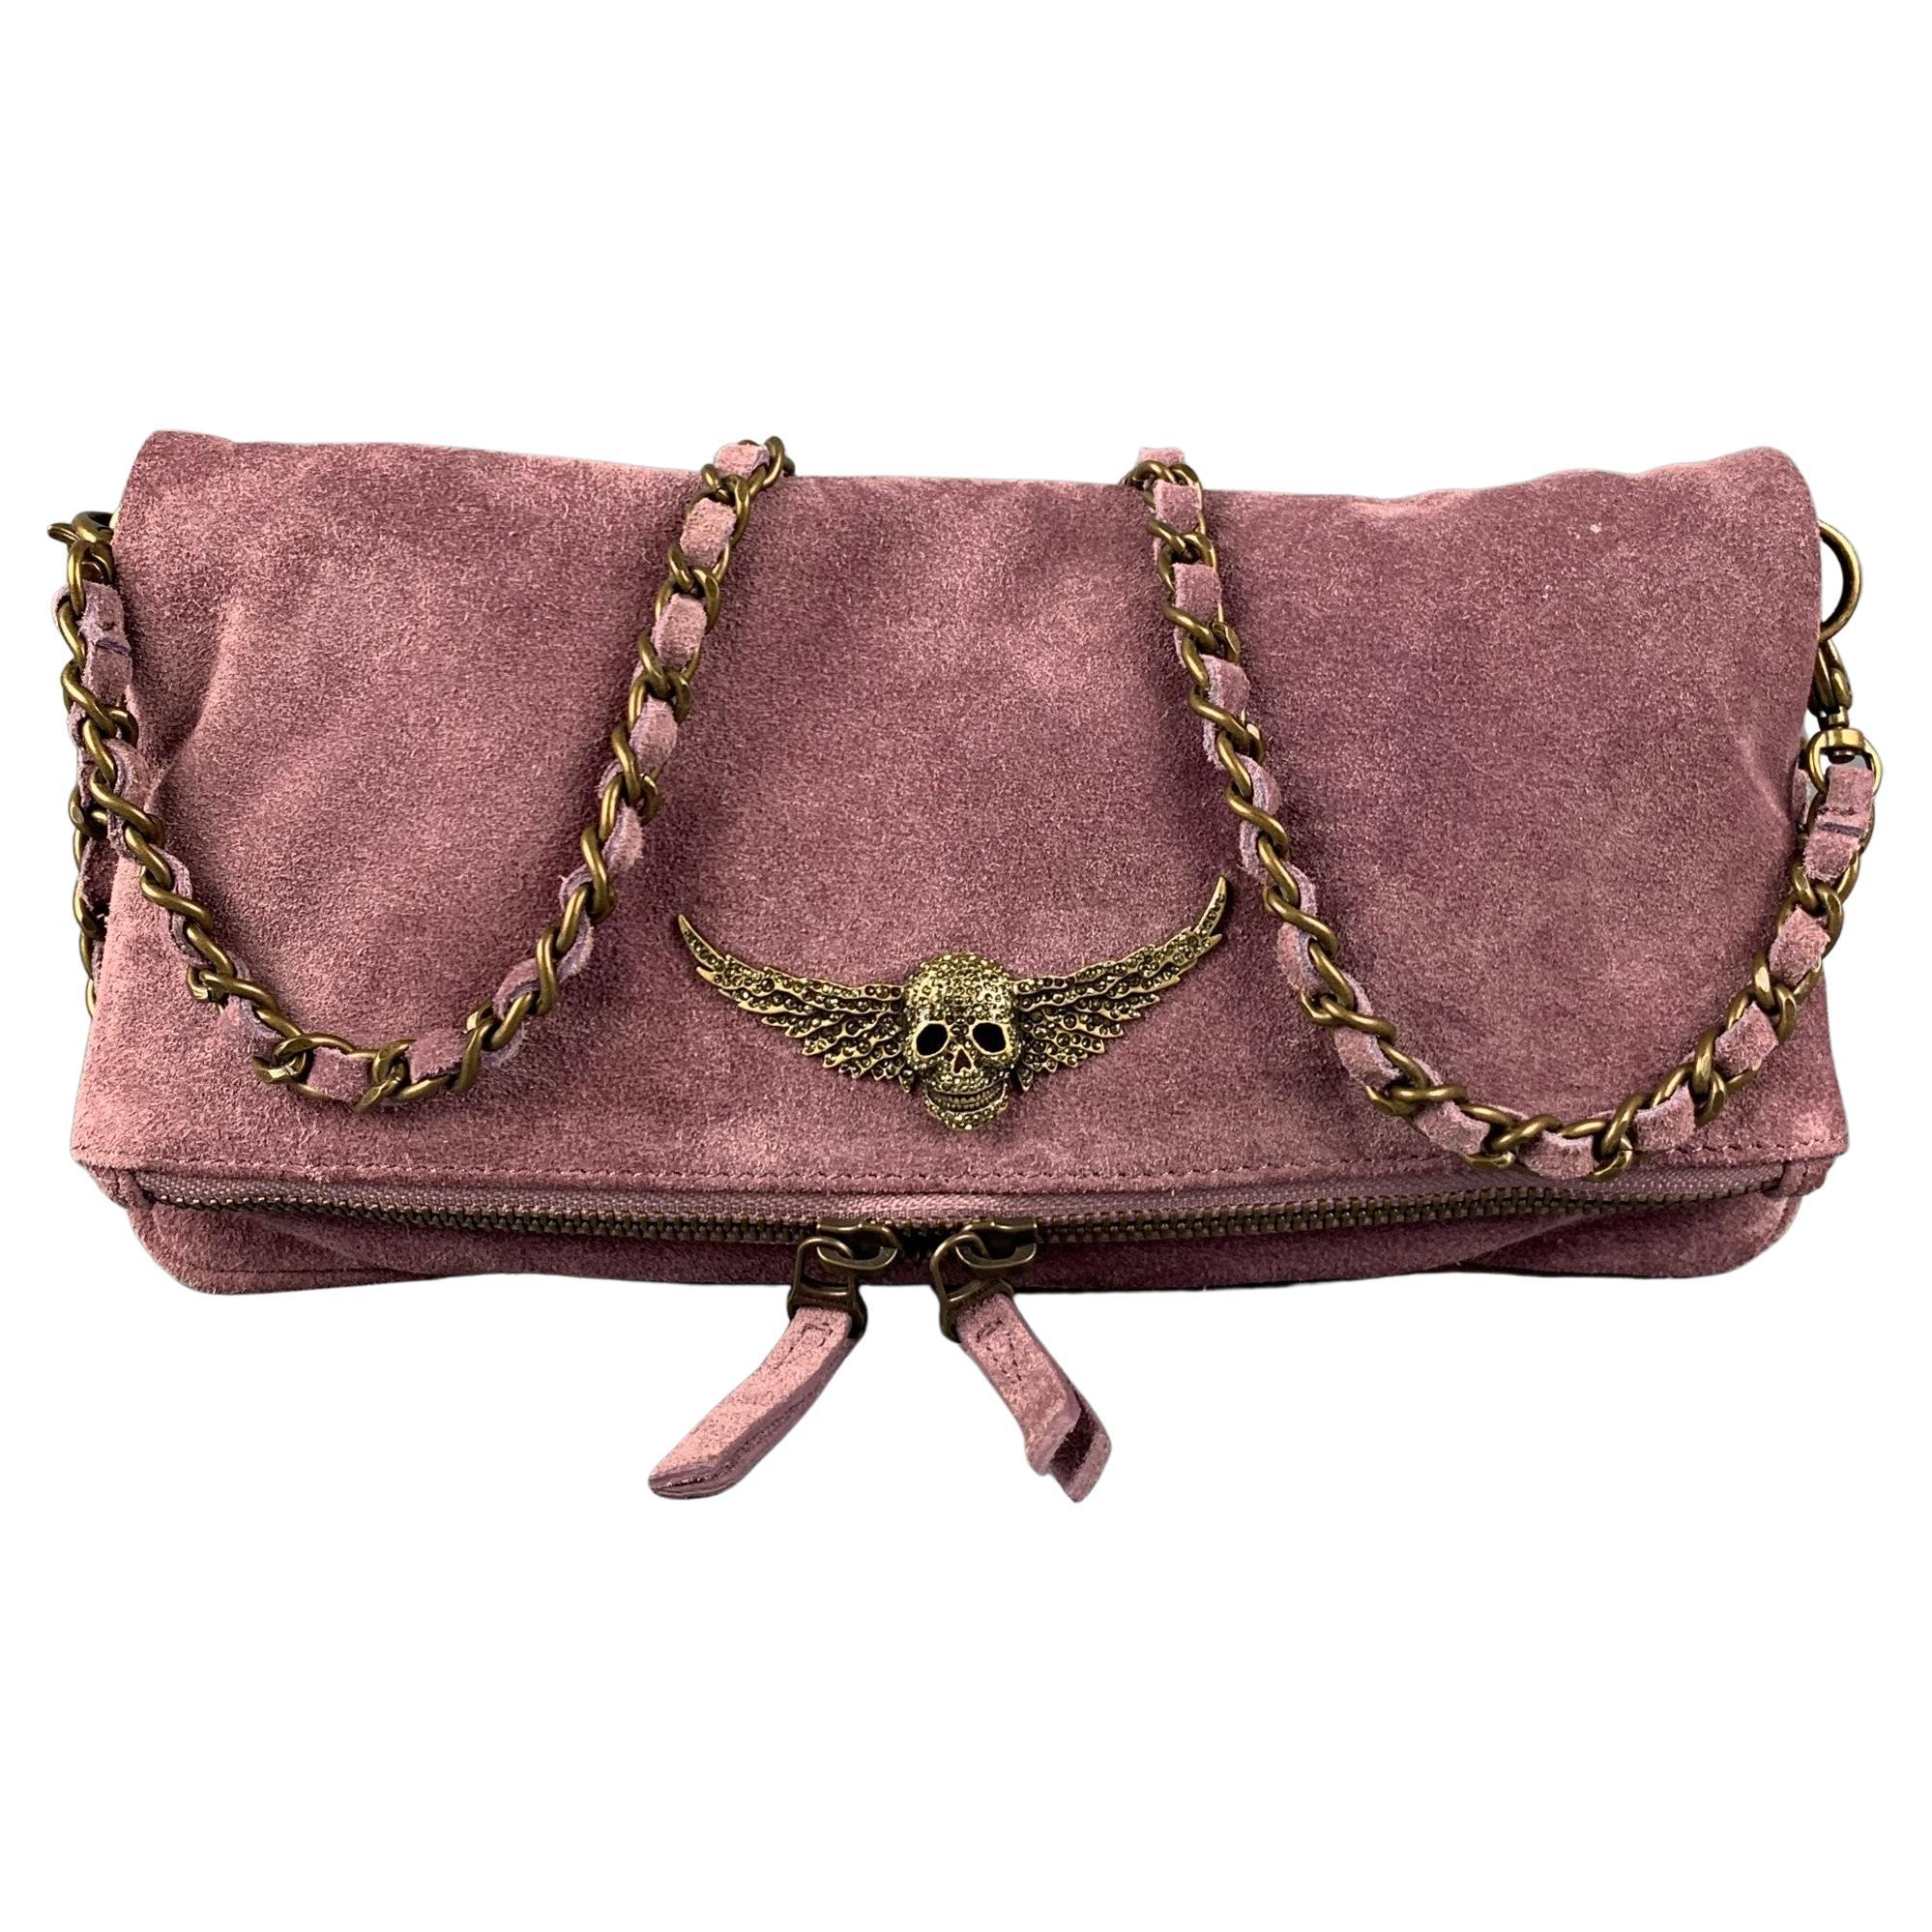 ZADIG & VOLTAIRE 2008 Purple Skull Suede Shoulder Bag Handbag